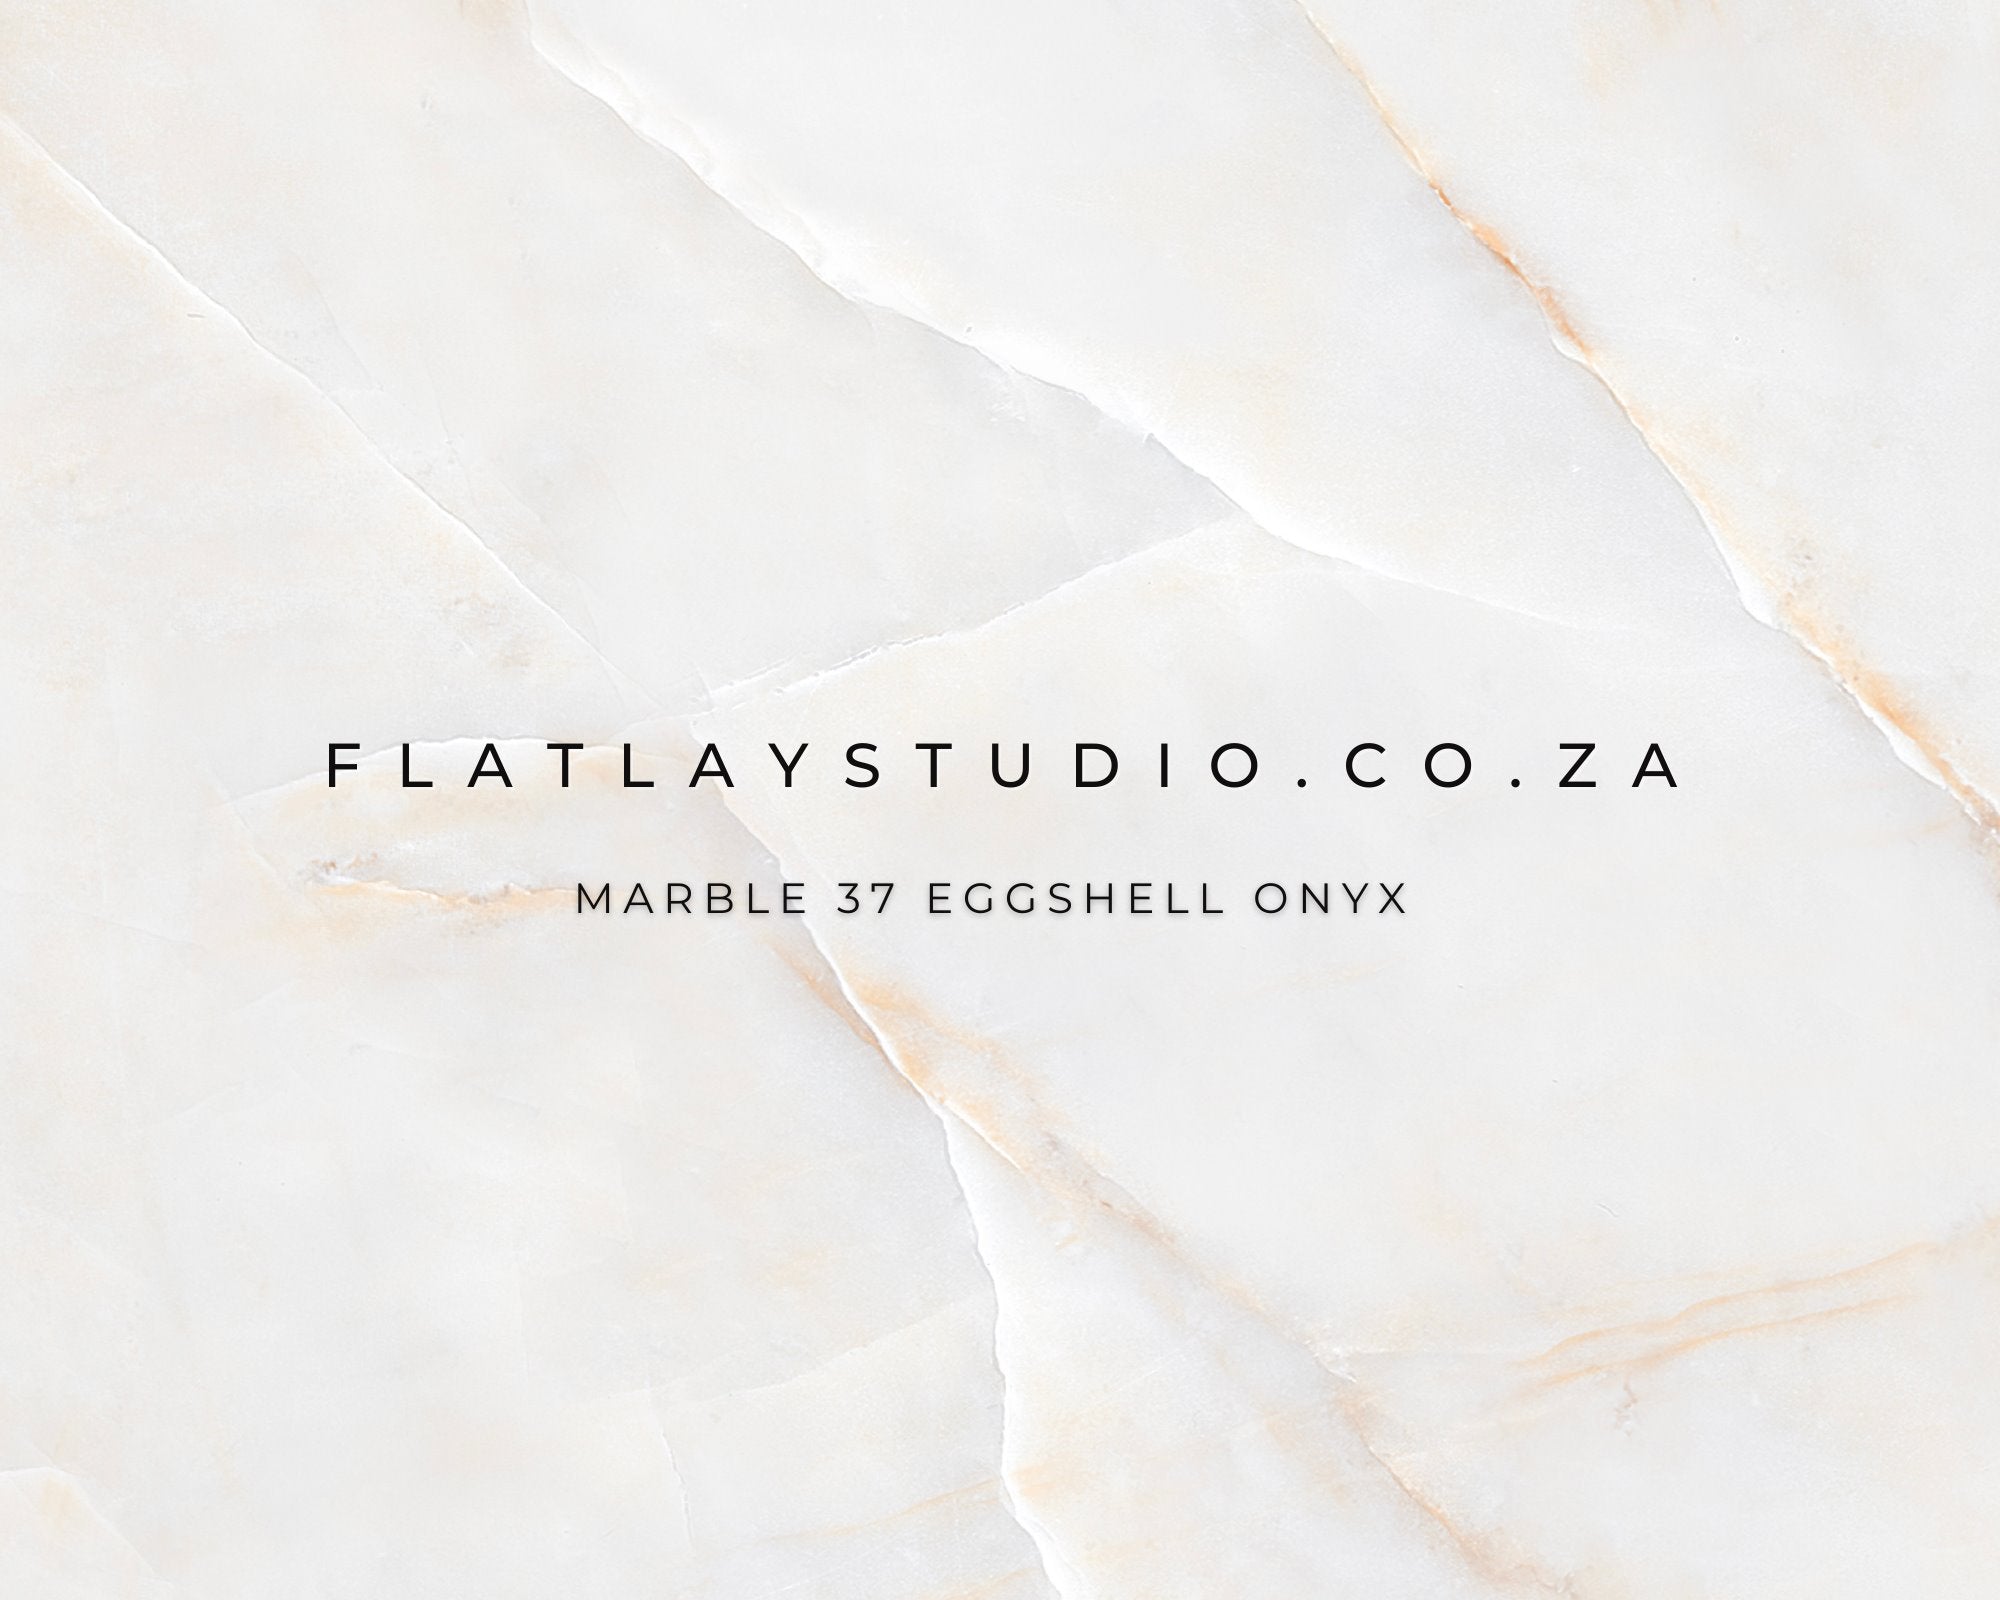 Marble 37 Eggshell Onyx - FlatlayStudio Flatlay Styling Board